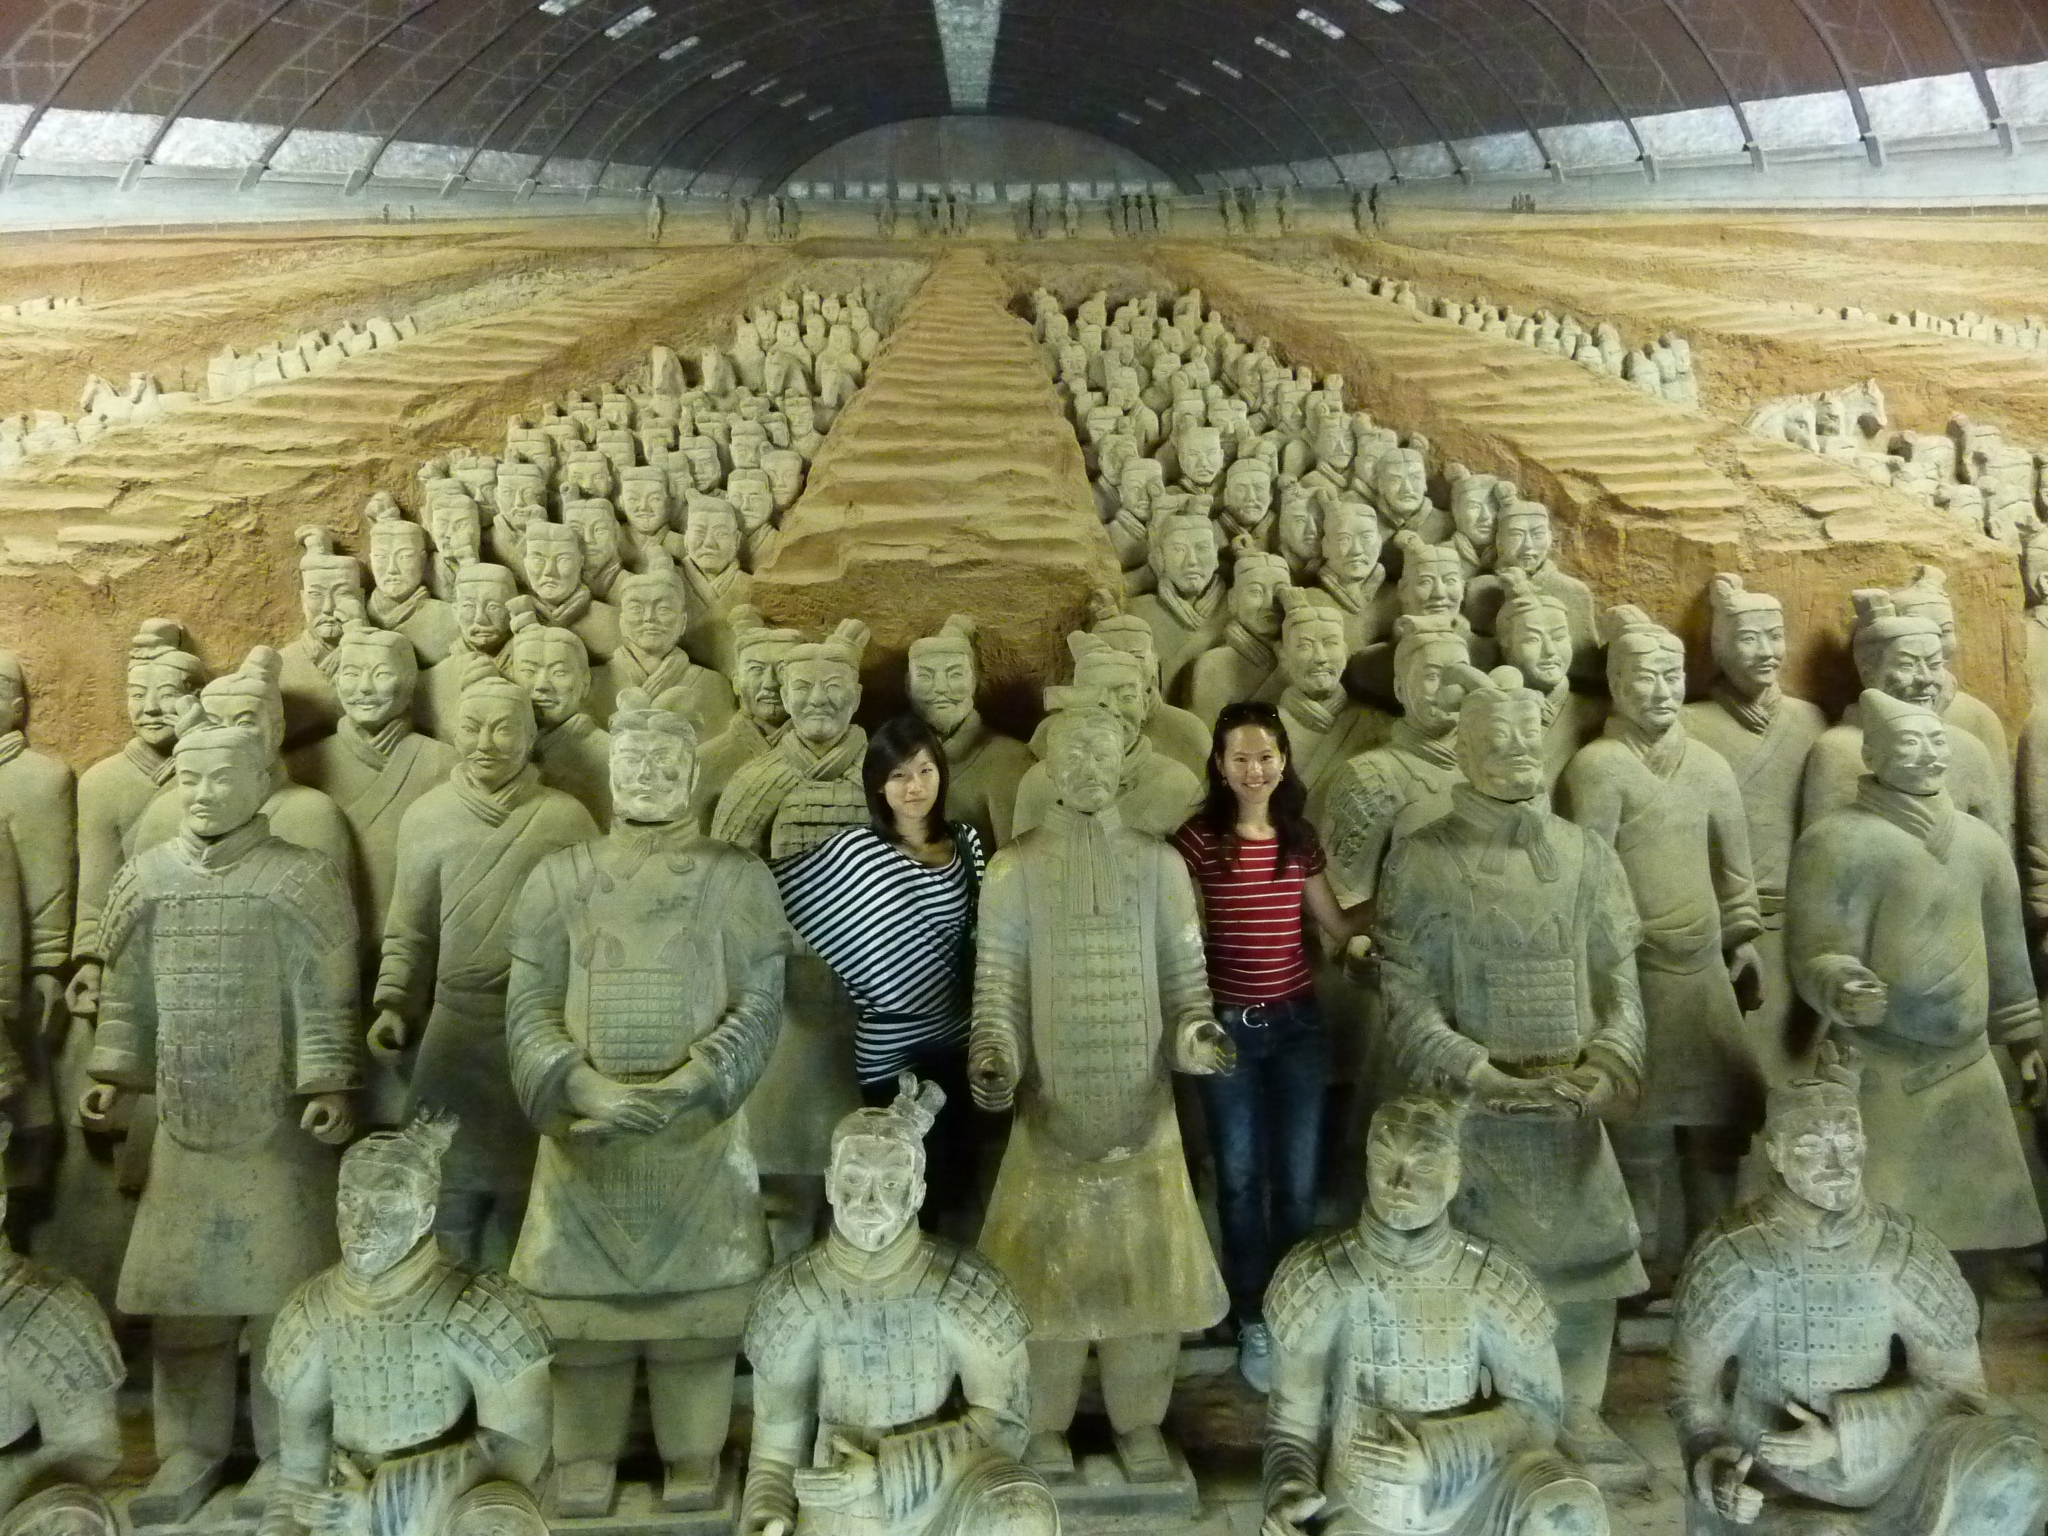 Terracotta Warriors at Qin Shi Huangdi's mausoleum, Xi'an